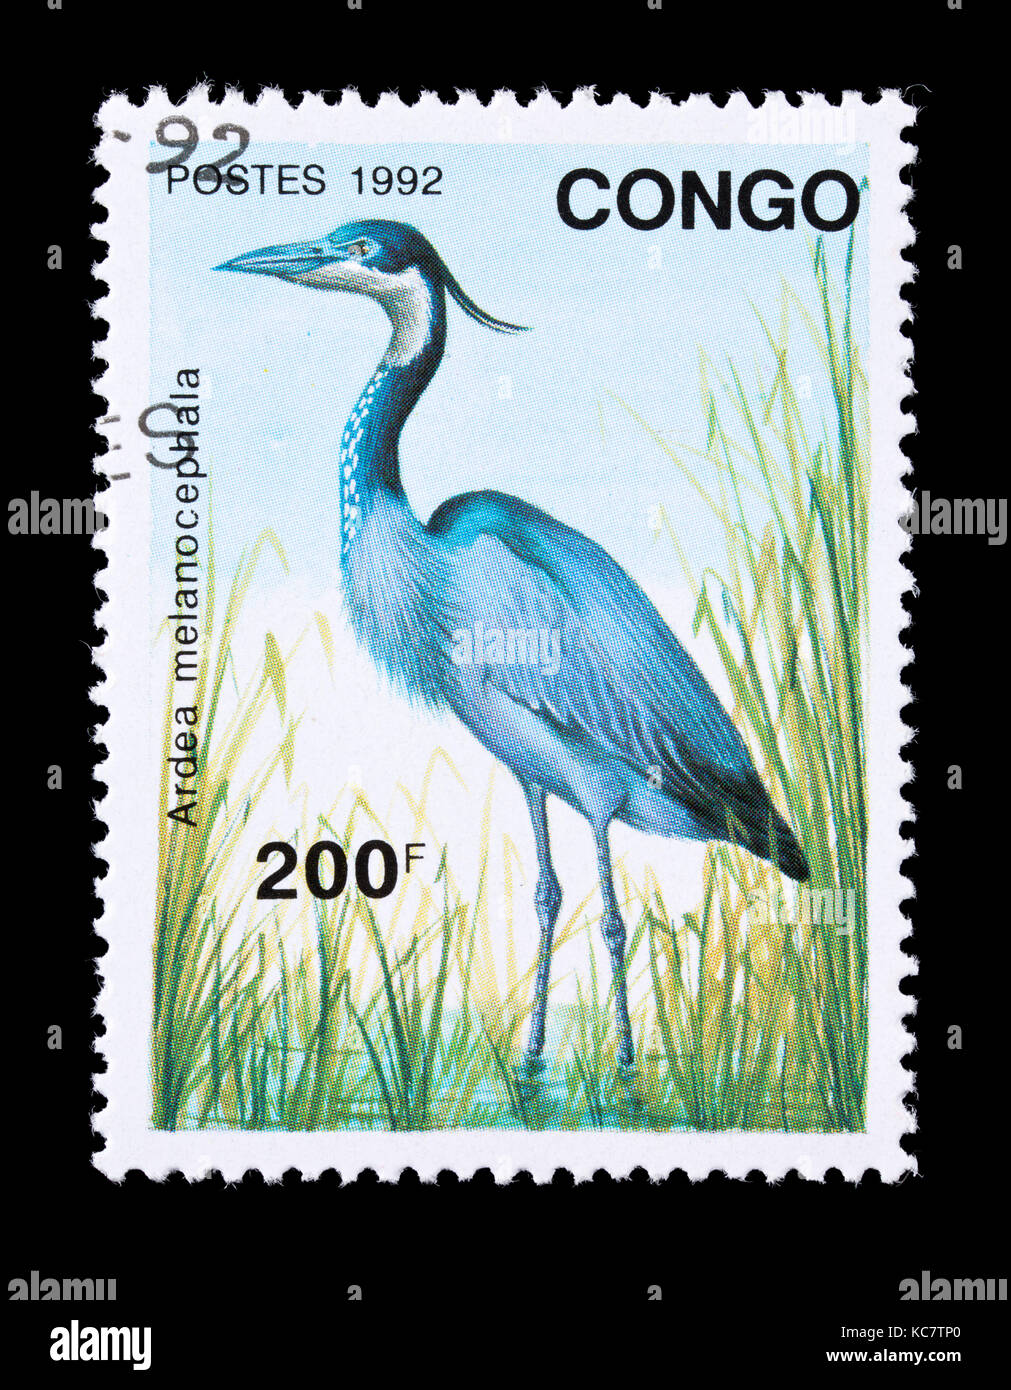 Timbre-poste de Congo représentant un héron à tête noire (Ardea melanocephala) Banque D'Images